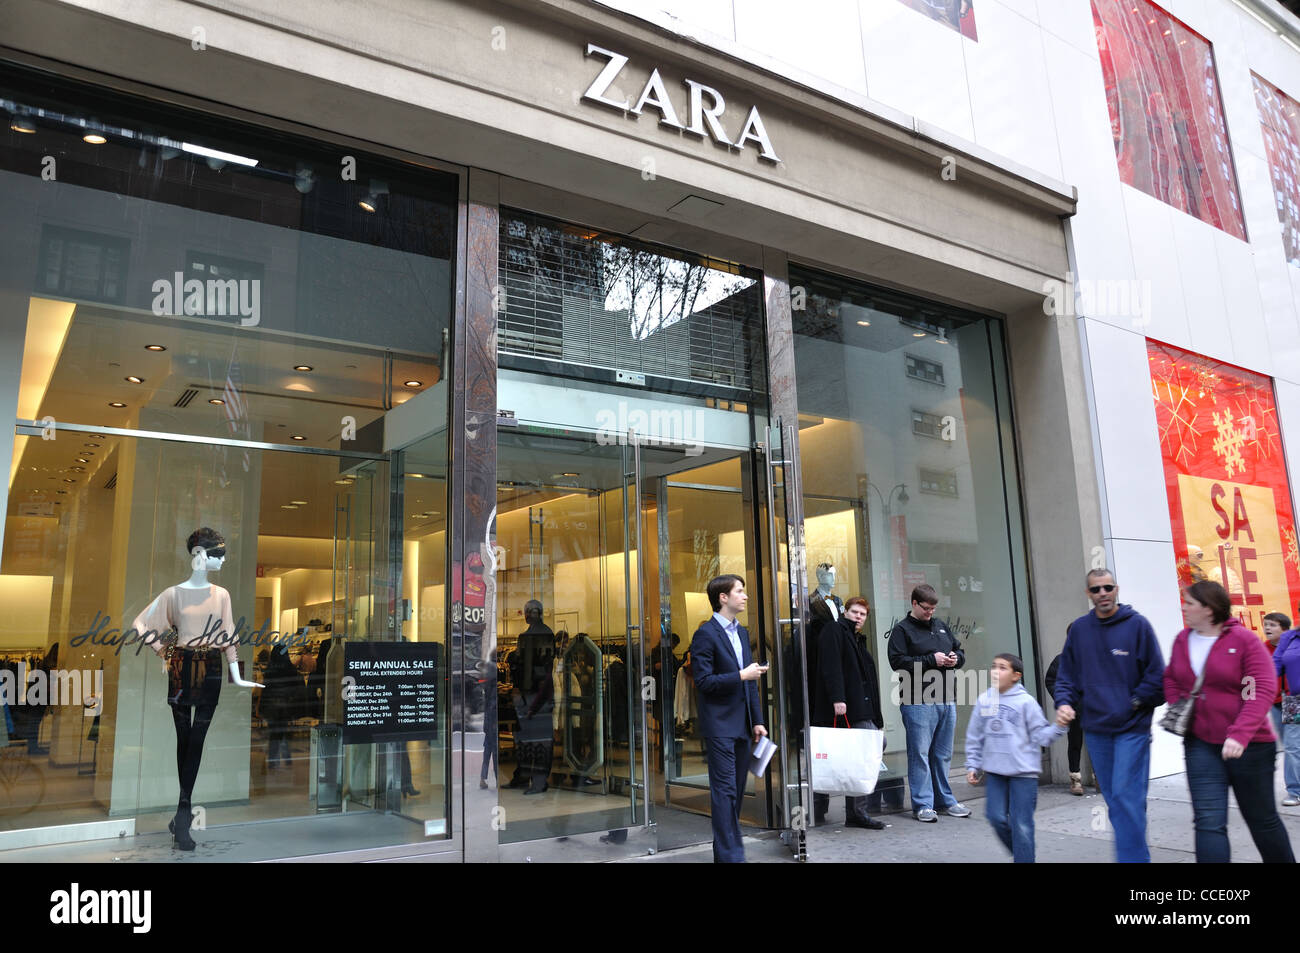 Zara store new york fotografías e imágenes de alta resolución - Alamy